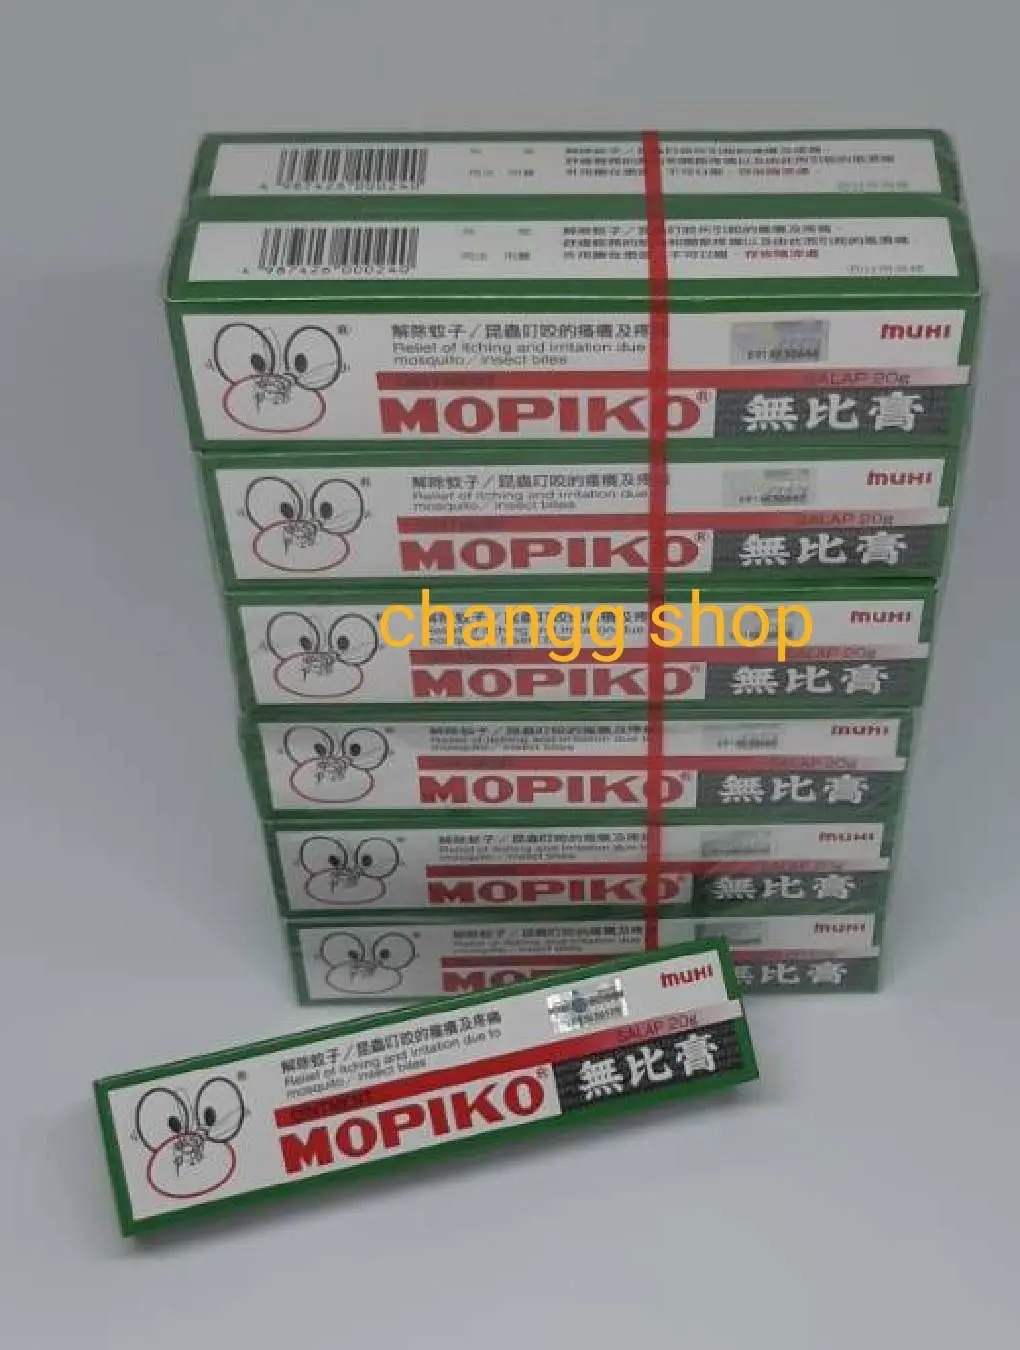 MOPIKO ครีมทาแก้ยุงและแมลงกัด 20 g.